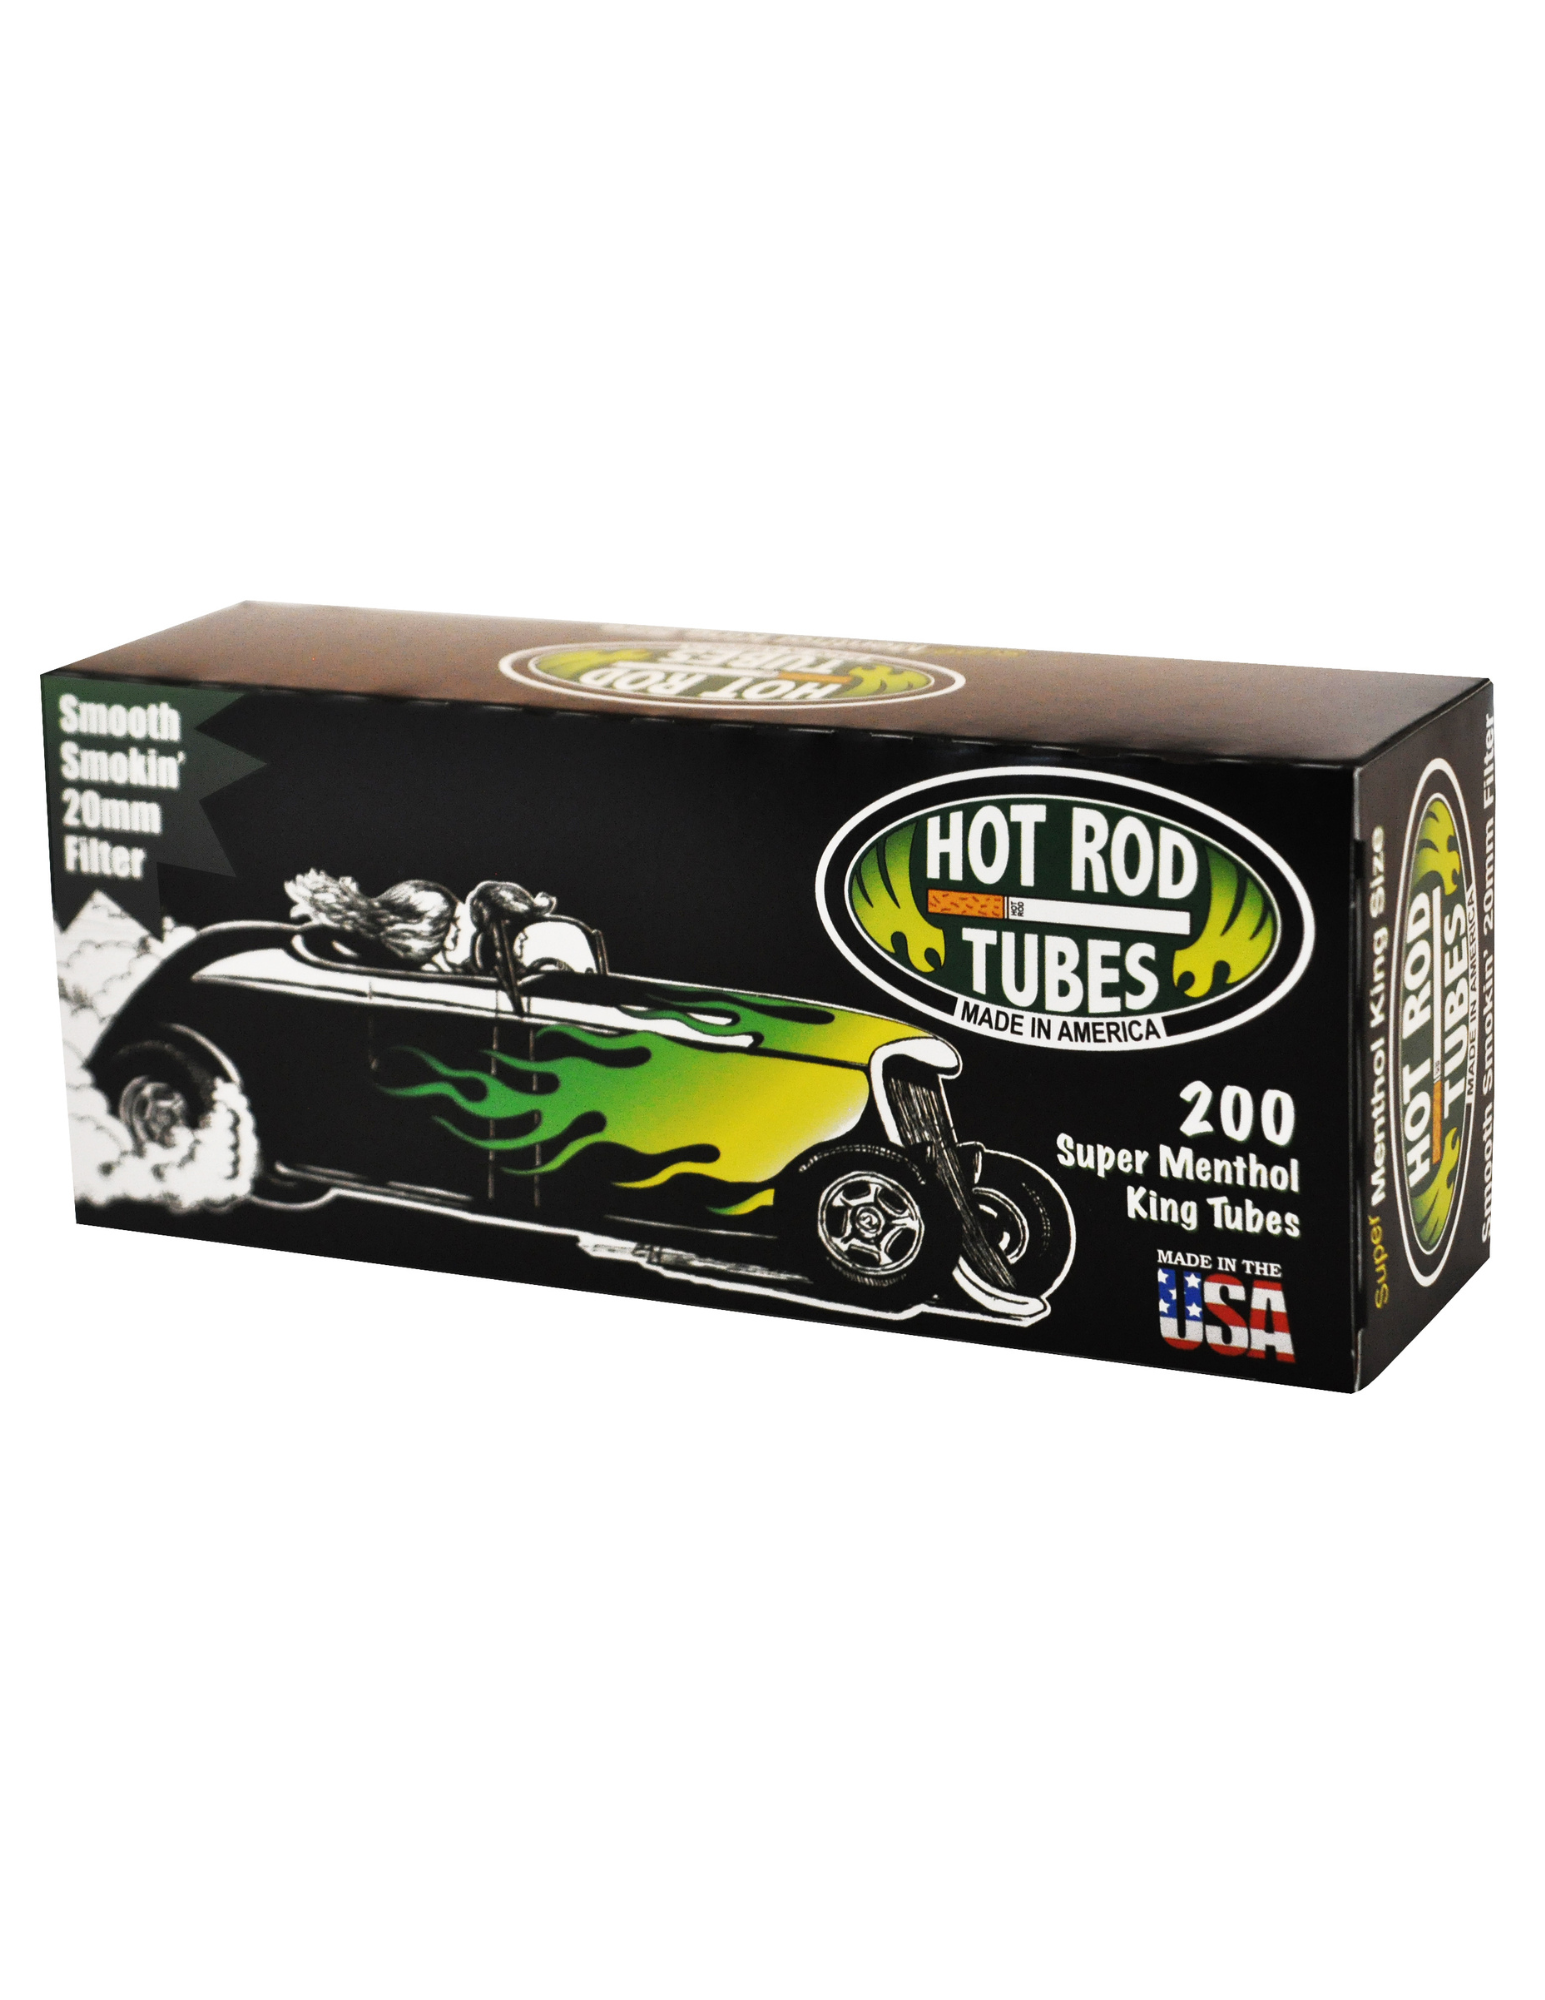 HOT Rod Cigarette Tubes Filters Reguar 100mm 200 Count Per Box